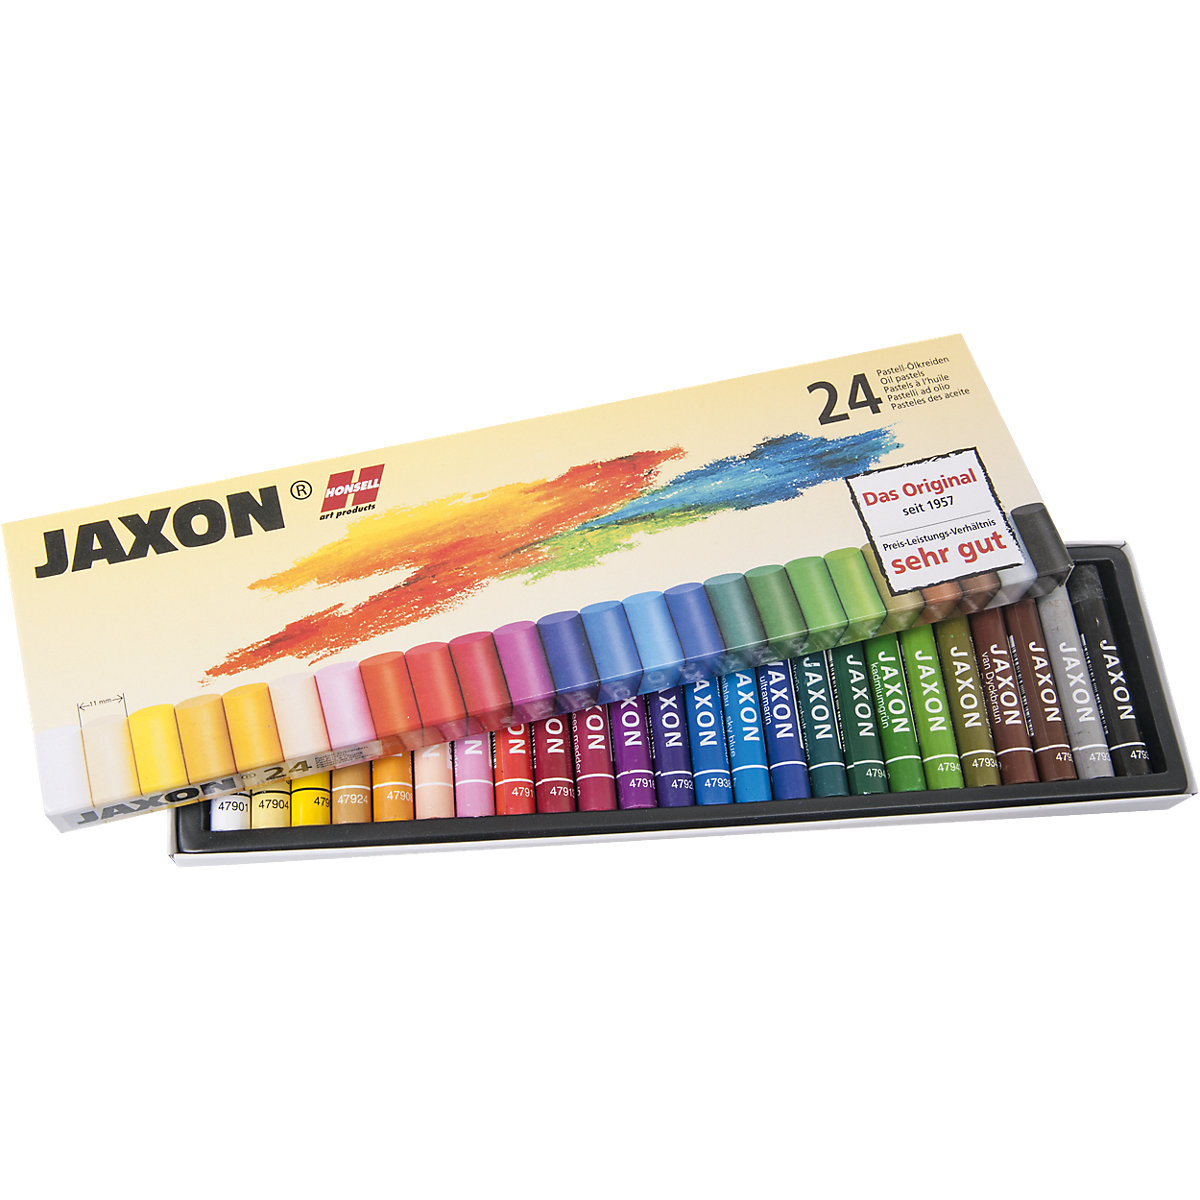 Jaxon Ölmalkreiden 24 Farben